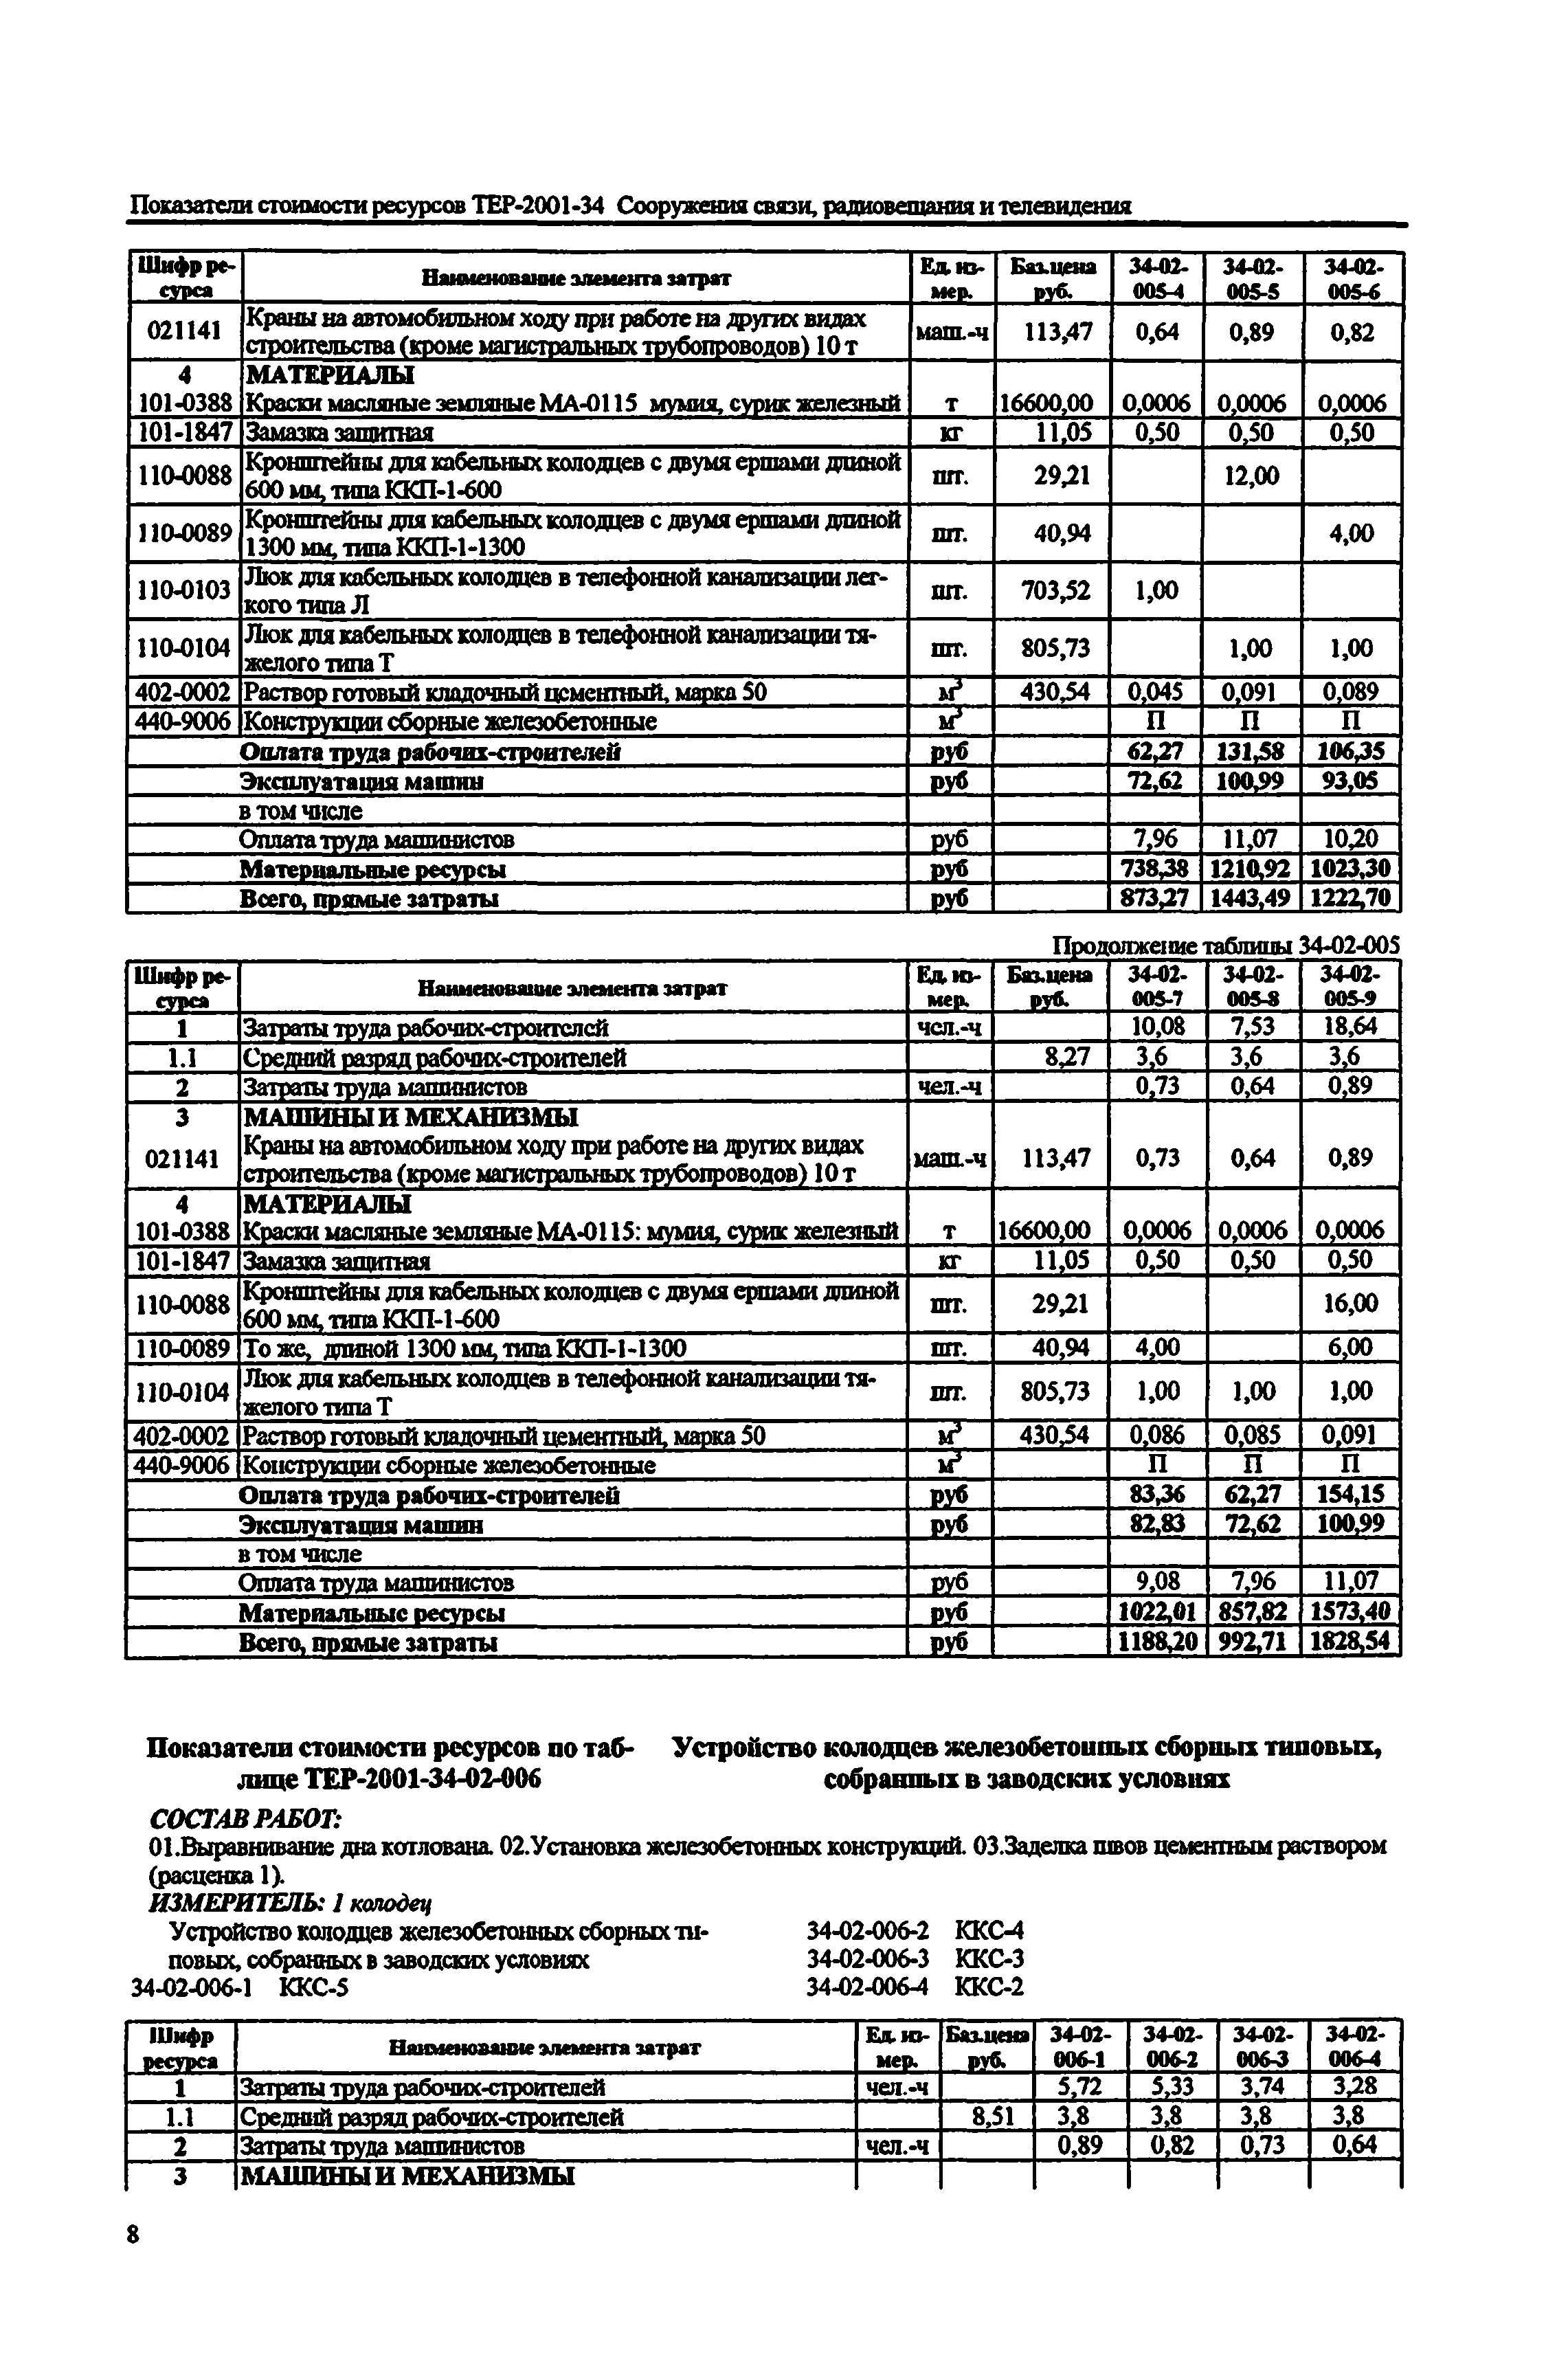 Справочное пособие к ТЕР 81-02-34-2001